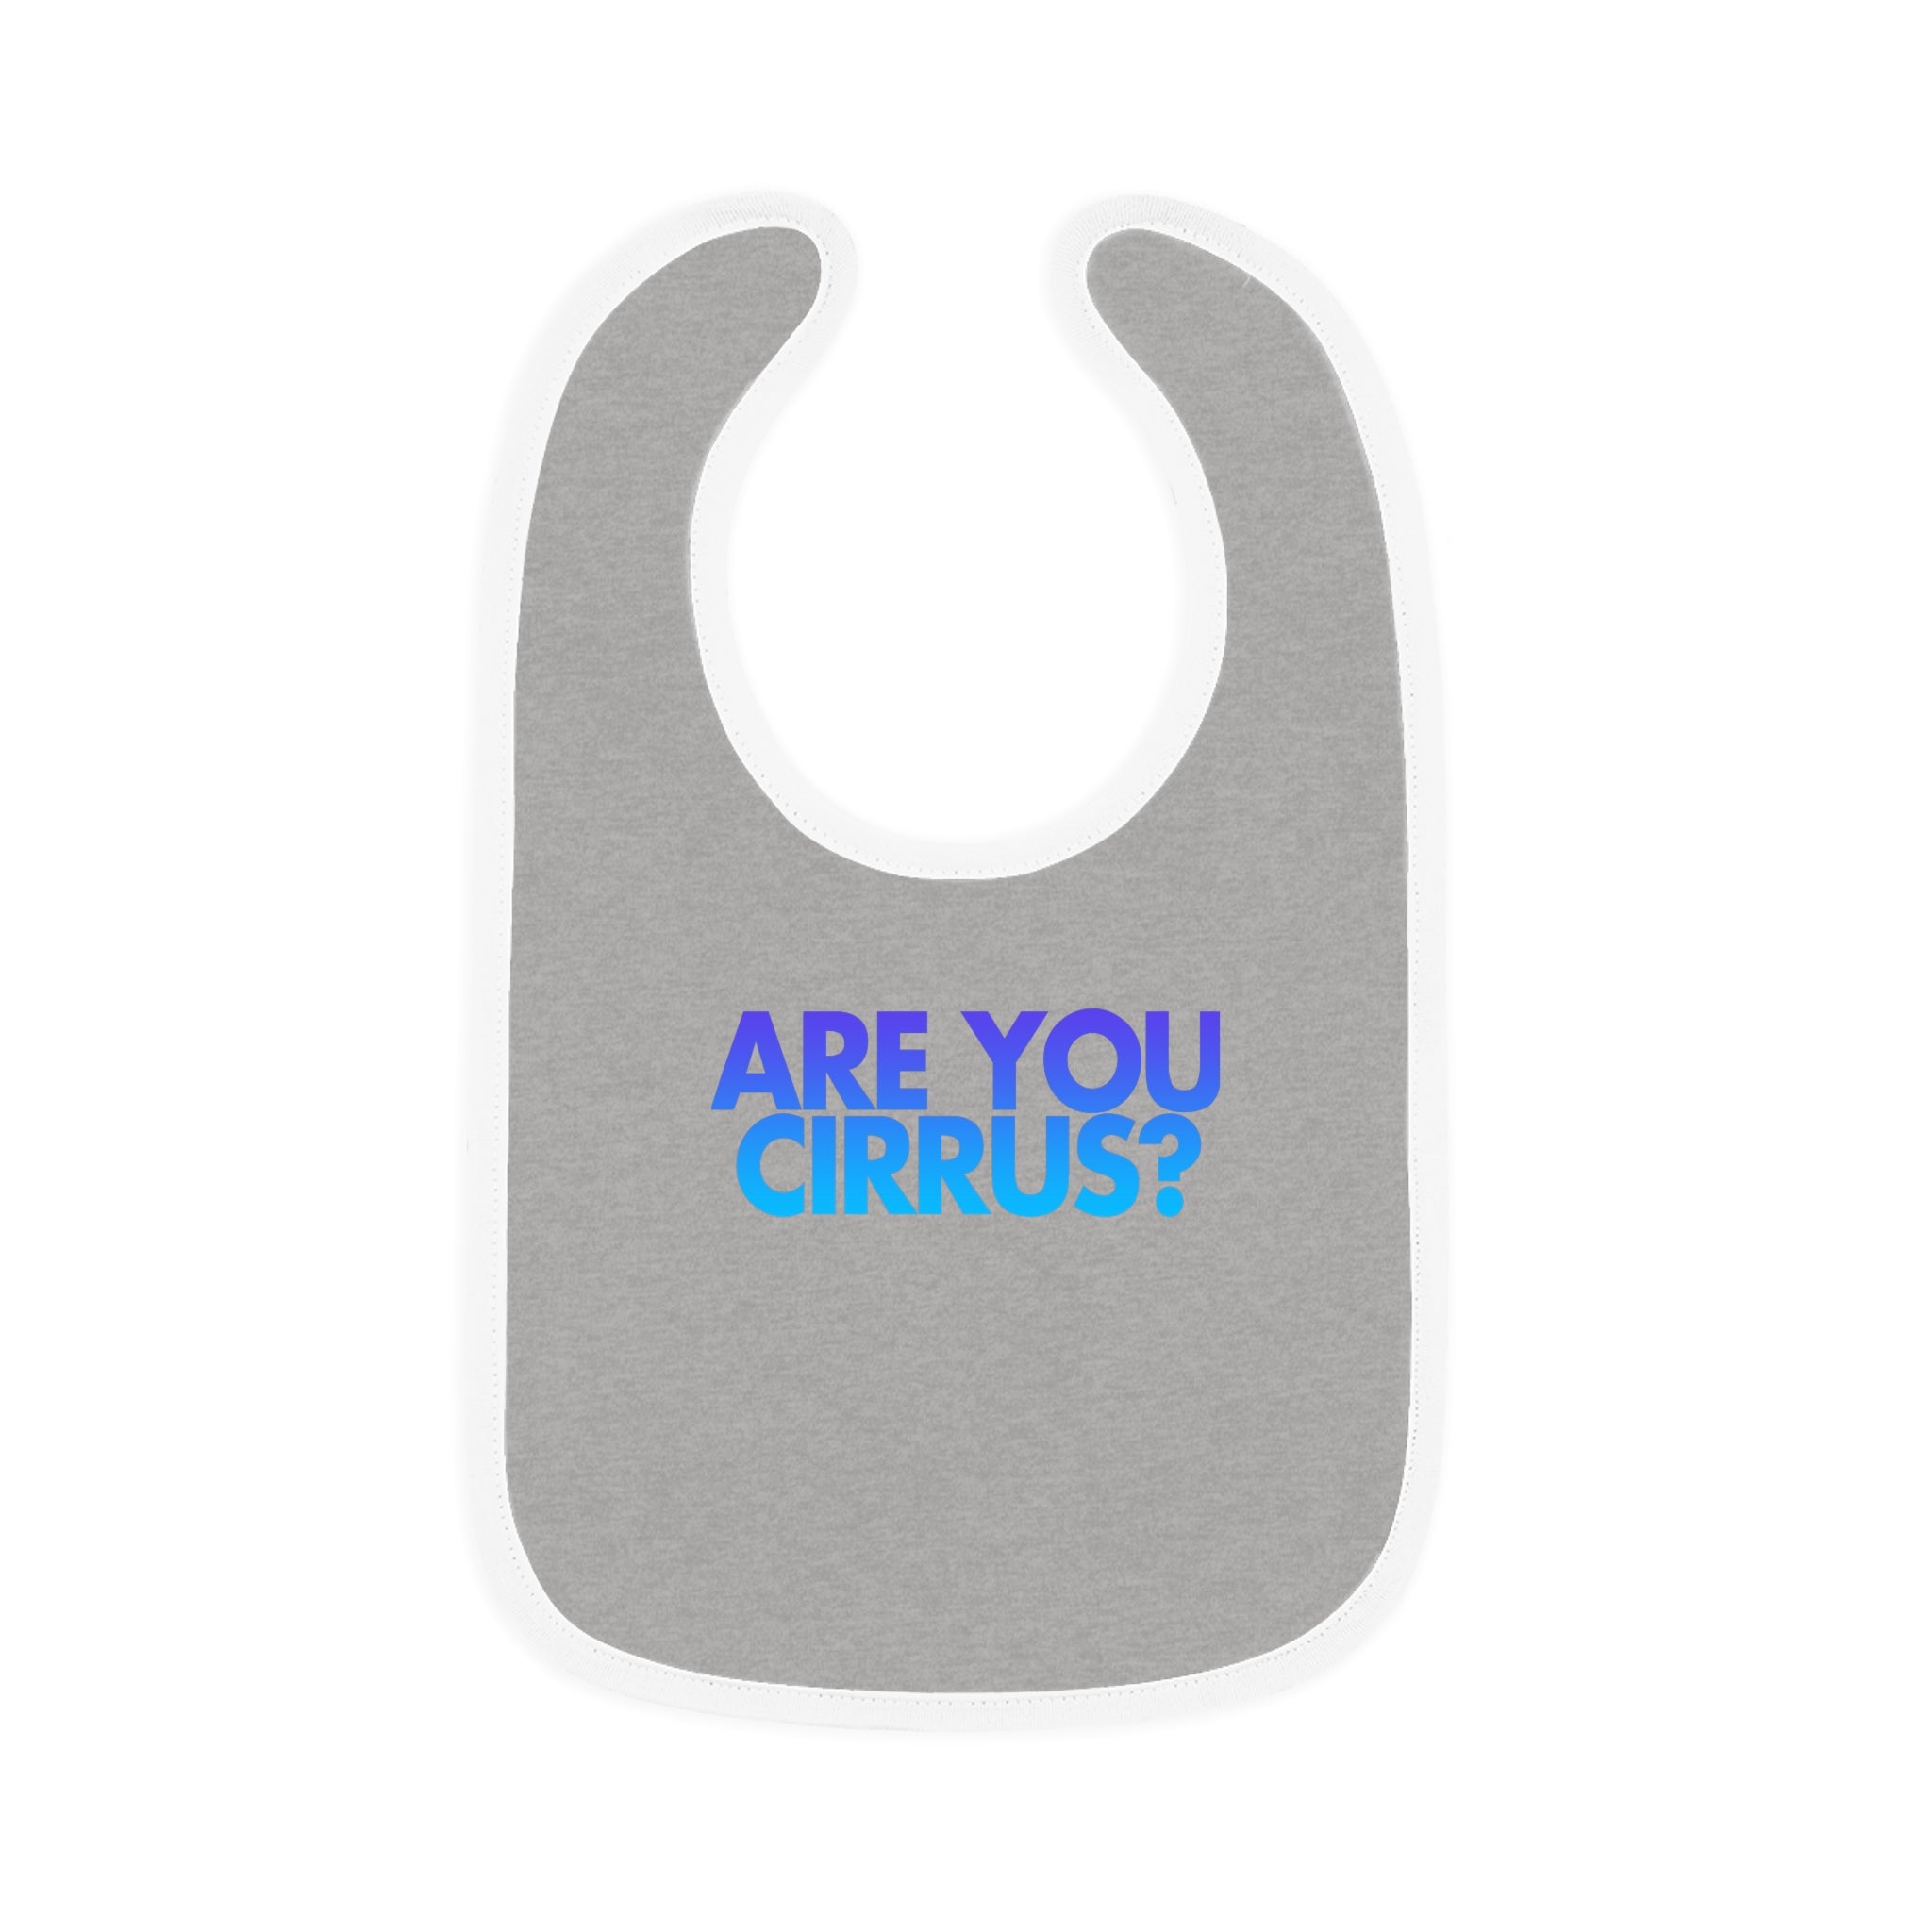 Are You Cirrus? Bib 